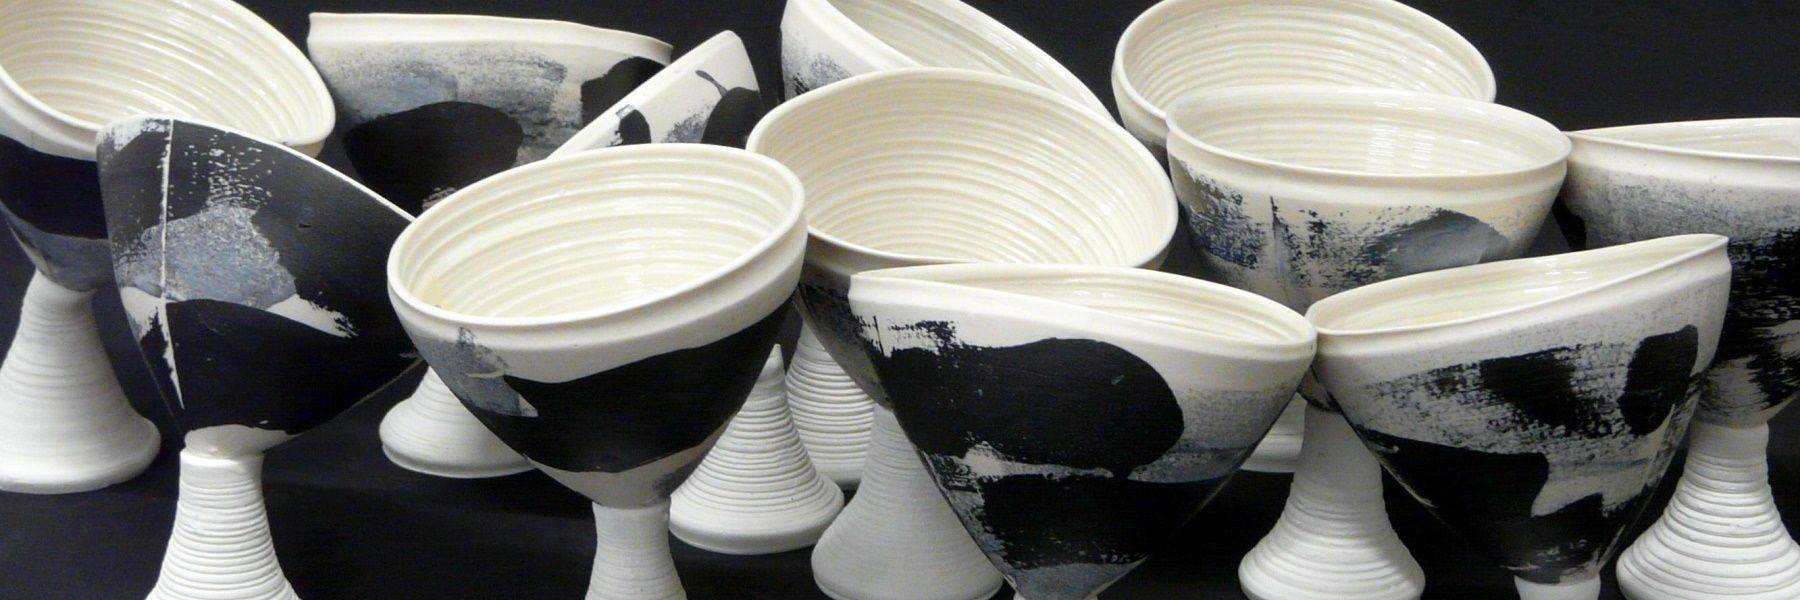 La peça consta d'un conjunt de copes de ceràmica apilades, colors blancs i negres